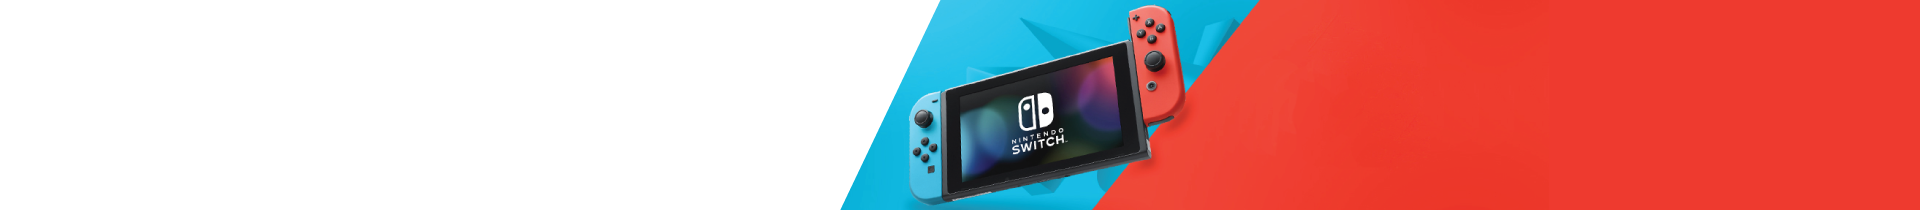 Jogos Nintendo Switch | Os Melhores Jogos Nintendo